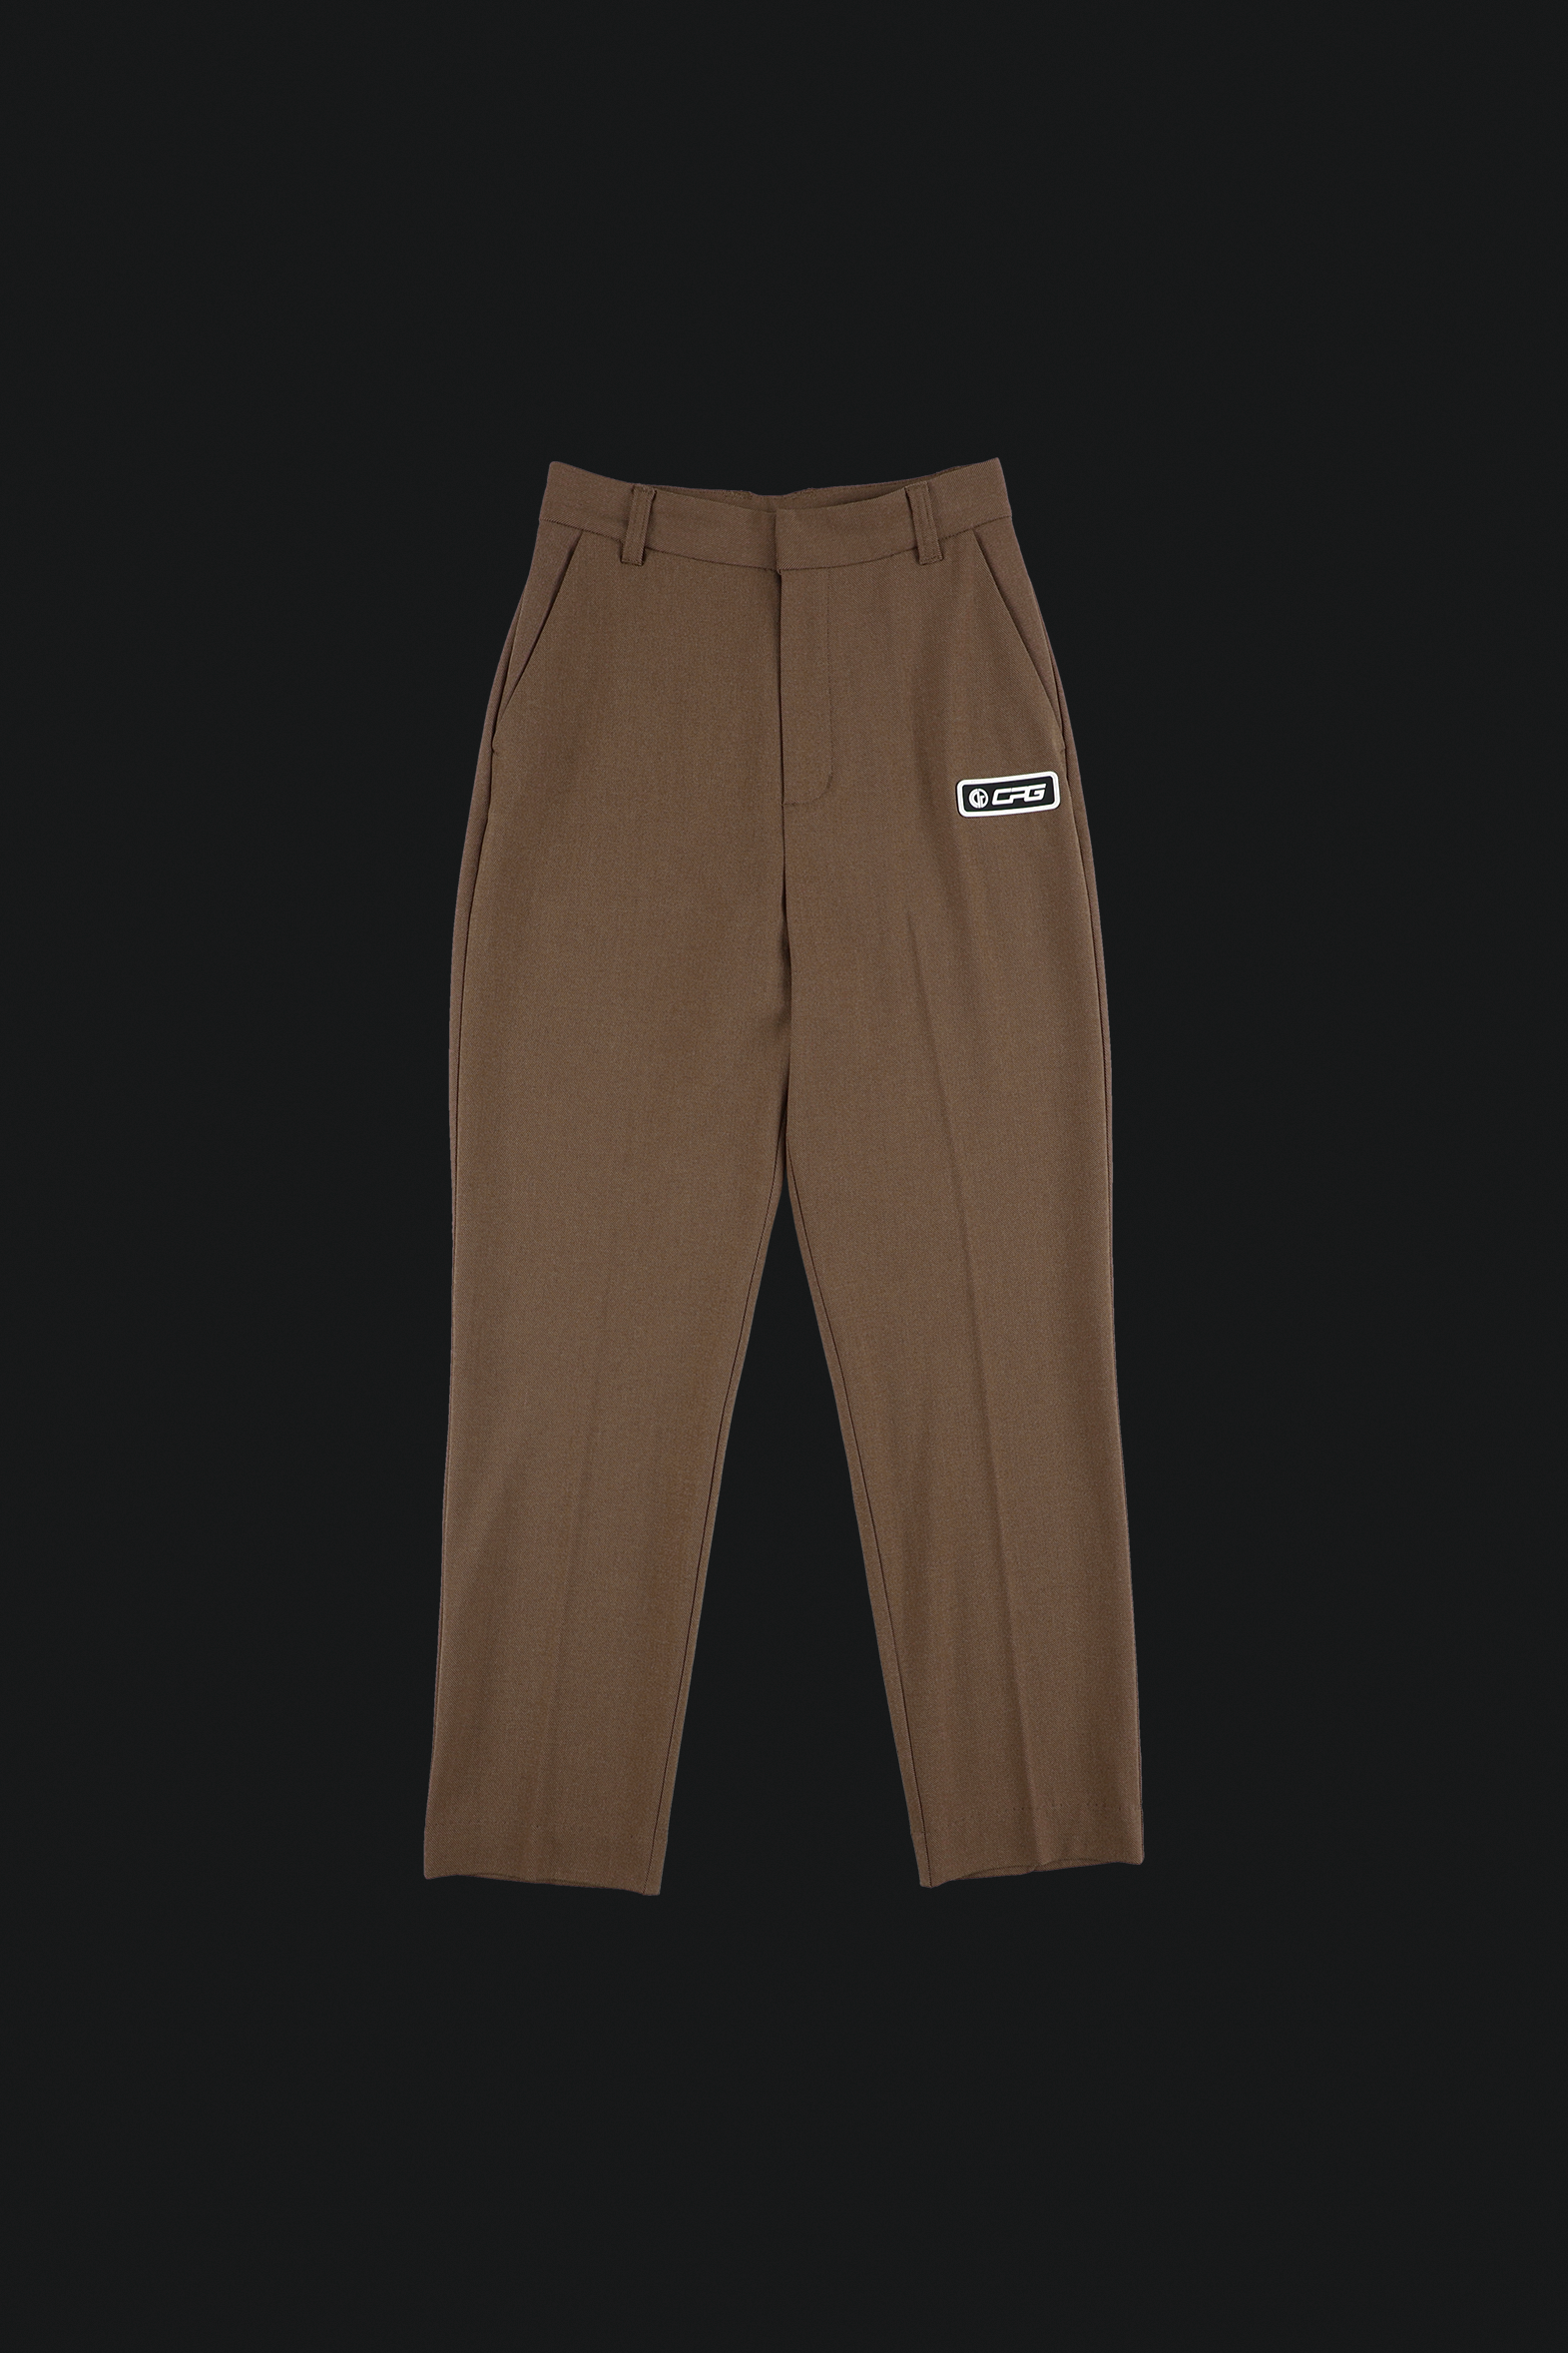 Warm basic silhouette pants（ウォームベーシックシルエットパンツ）